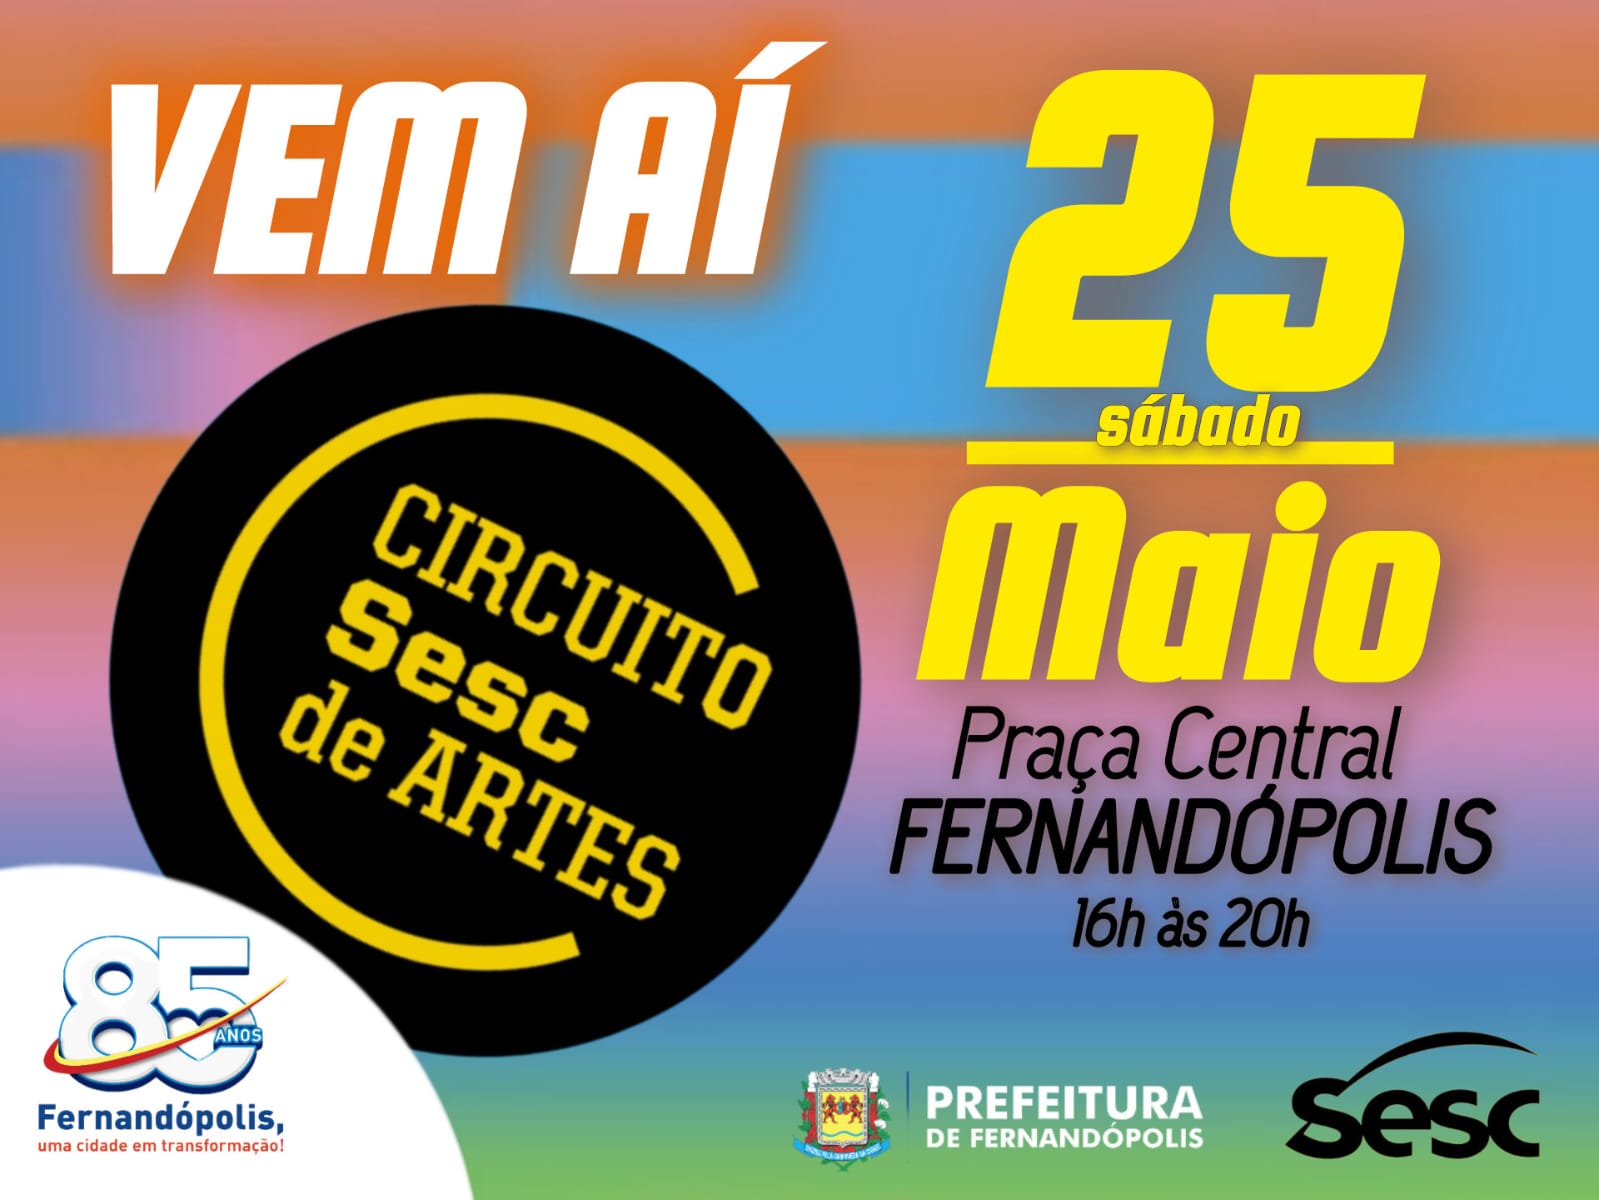 Circuito SESC de Artes acontece no próximo sábado, 25, em Fernandópolis